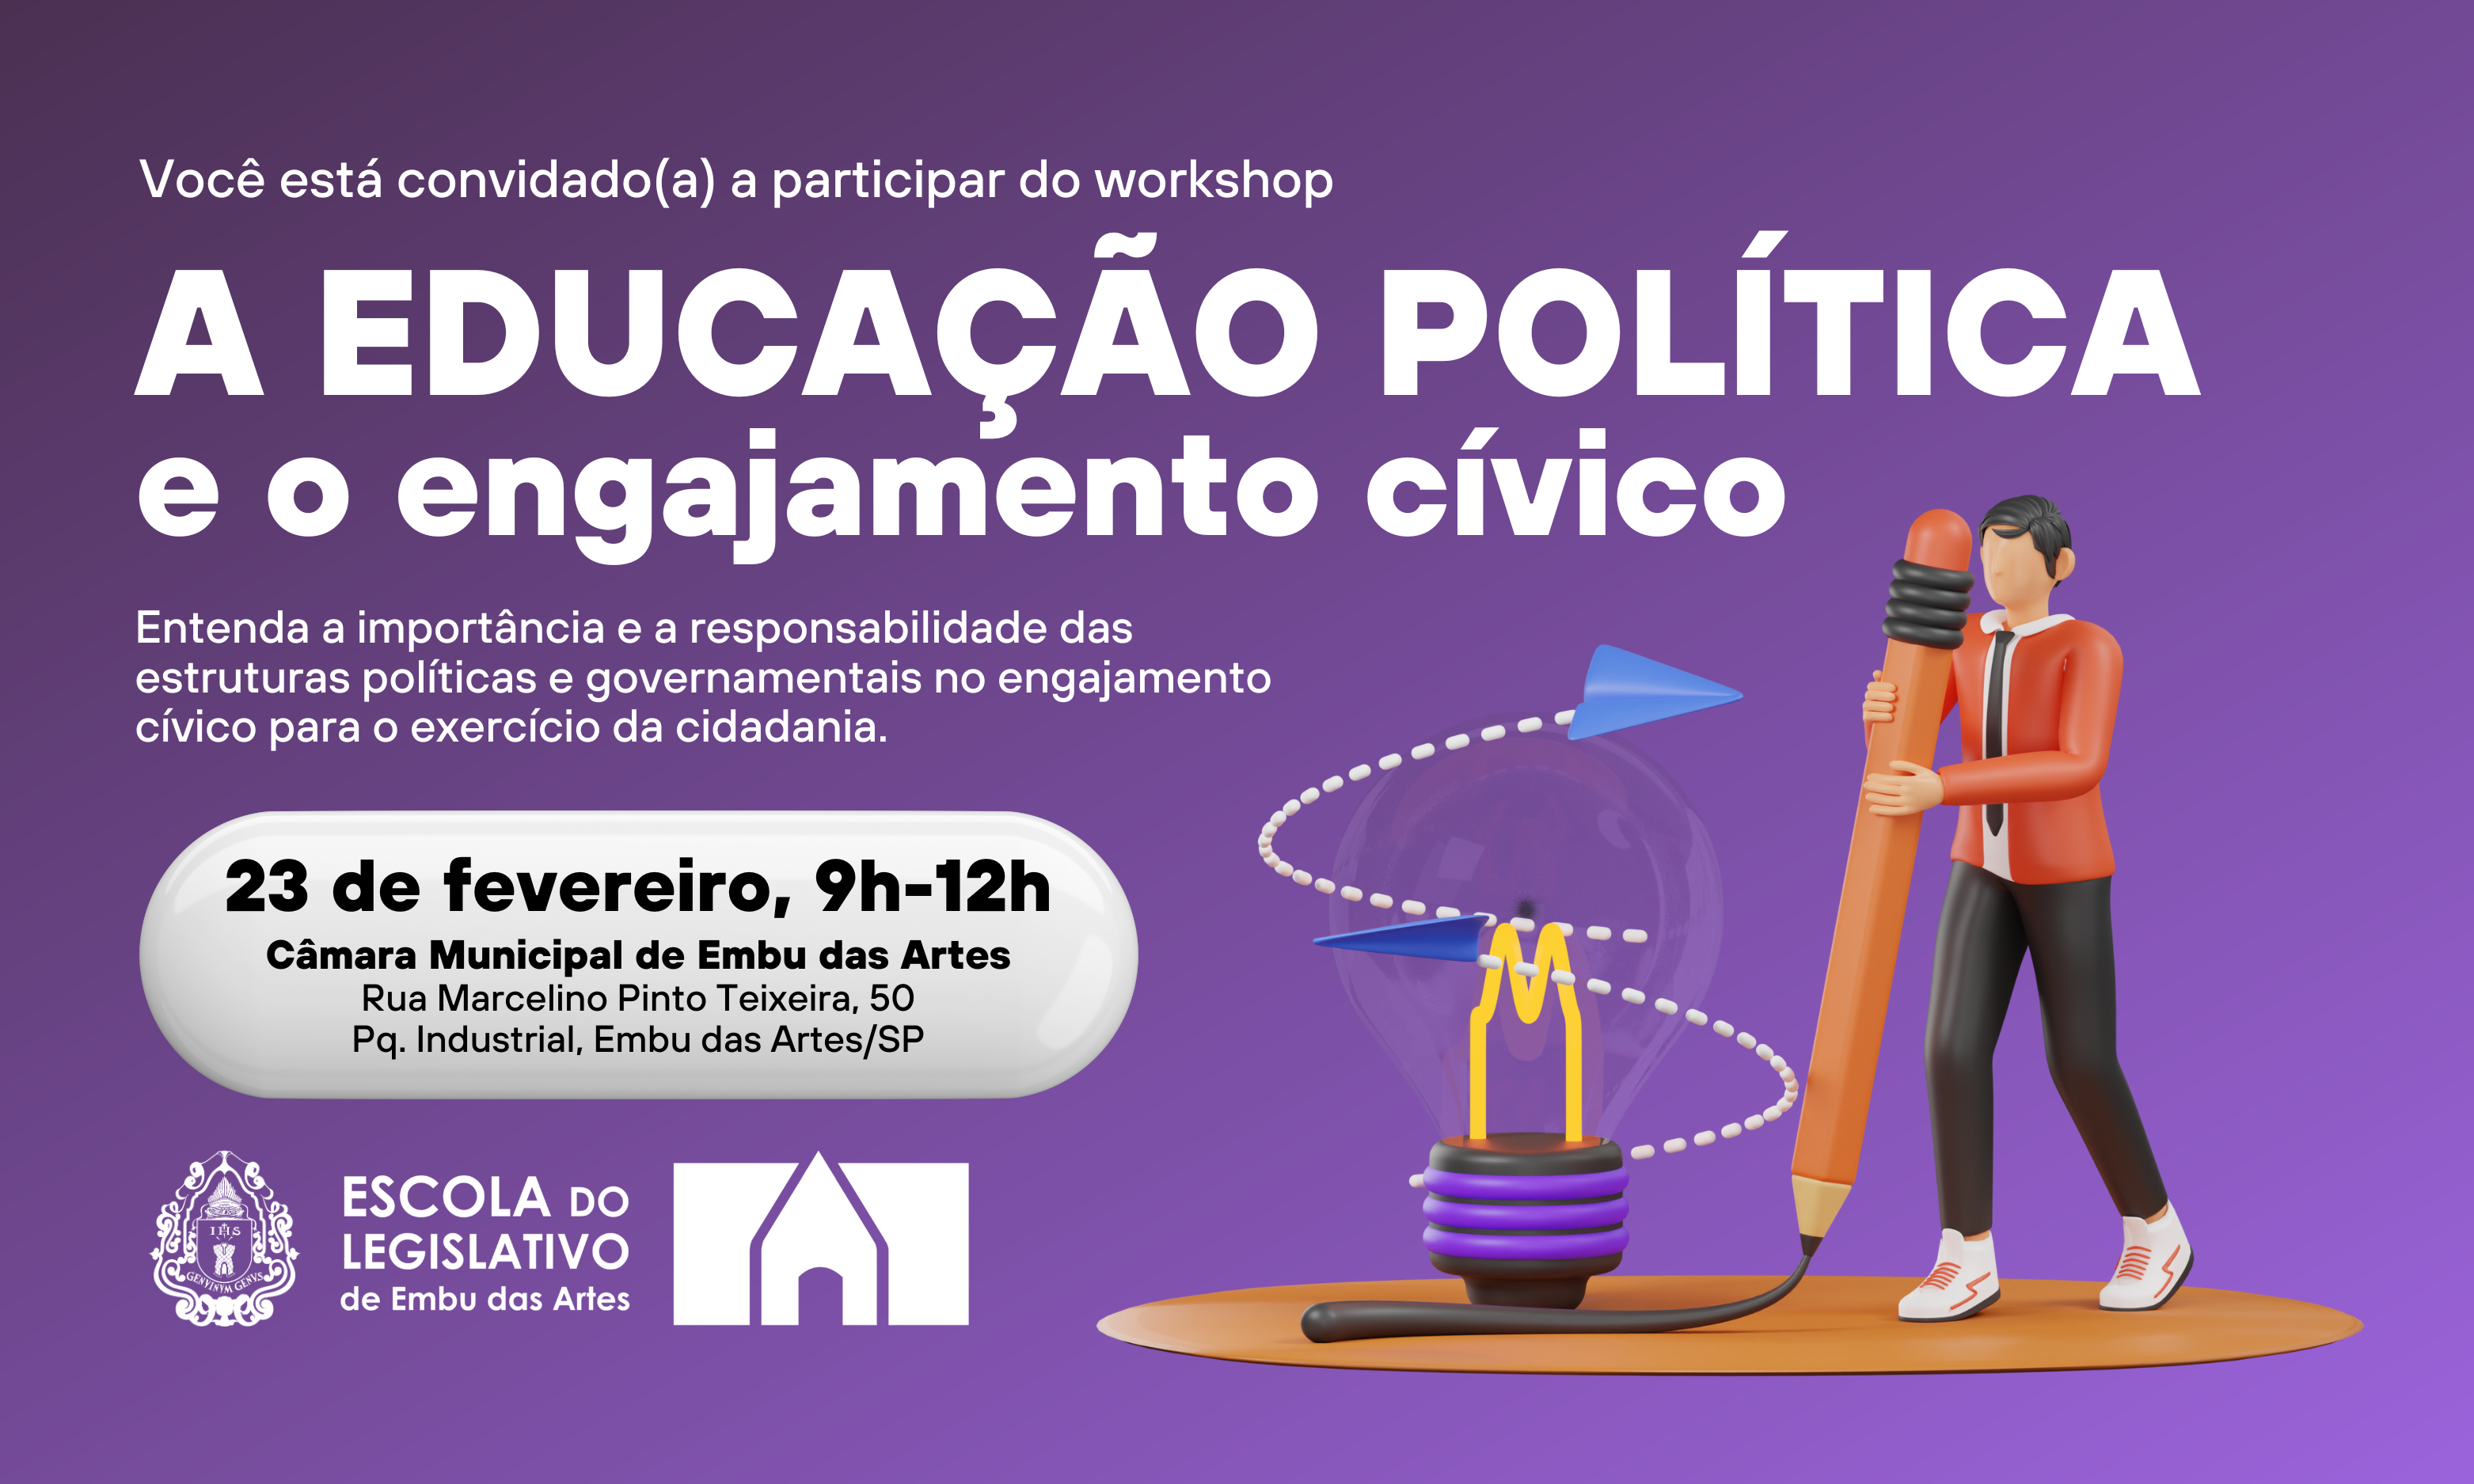 Câmara Municipal promove workshop sobre Educação Política no dia 23